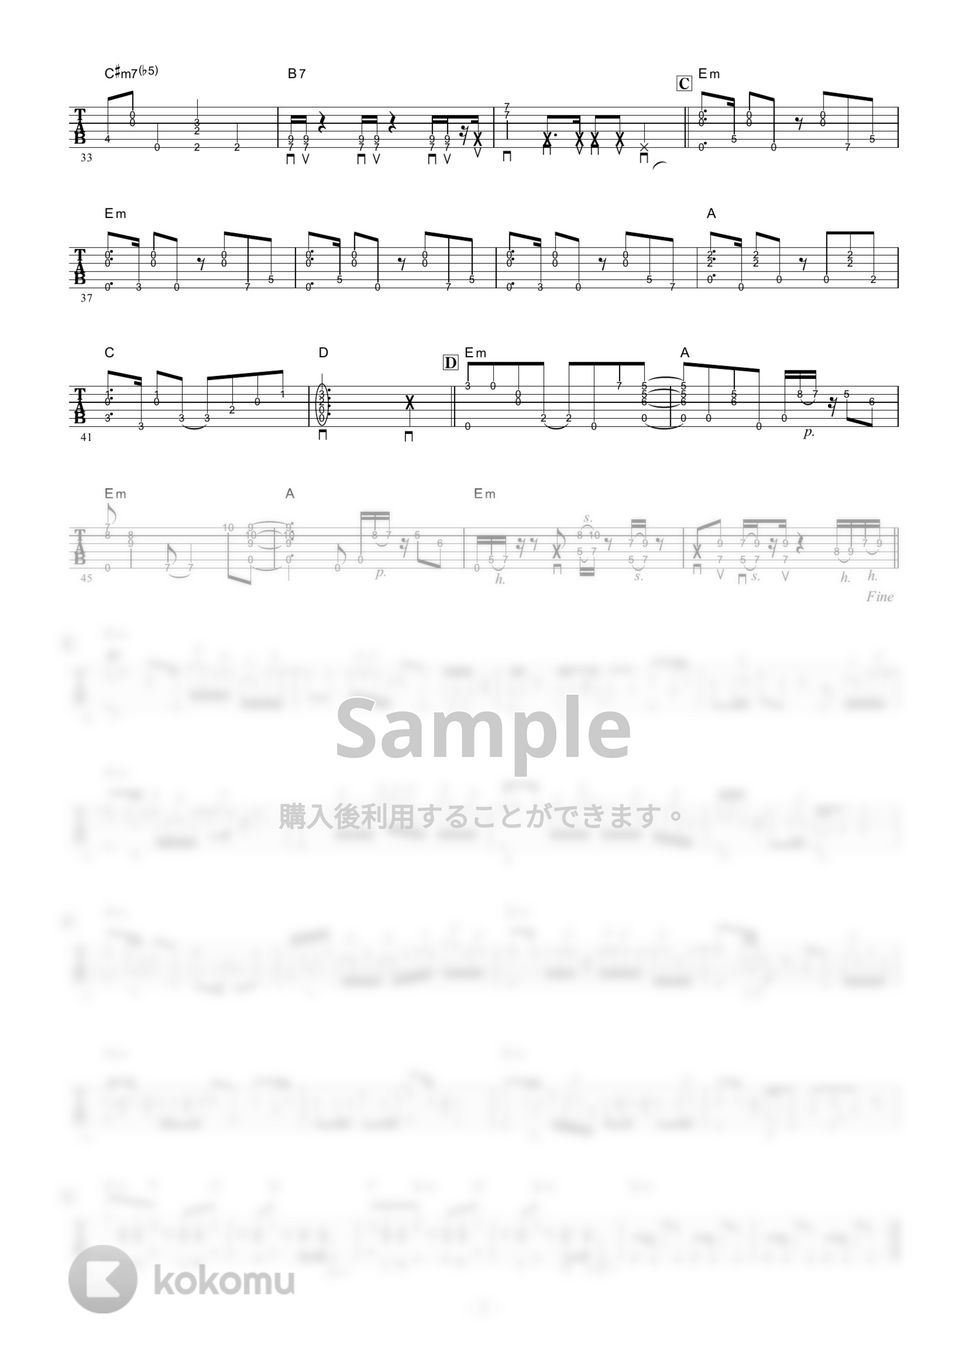 ピートマック・ジュニア / 大野雄二 - ルパン三世のテーマ '78 (ギター伴奏 / イントロ・間奏ソロギター) by 伴奏屋TAB譜